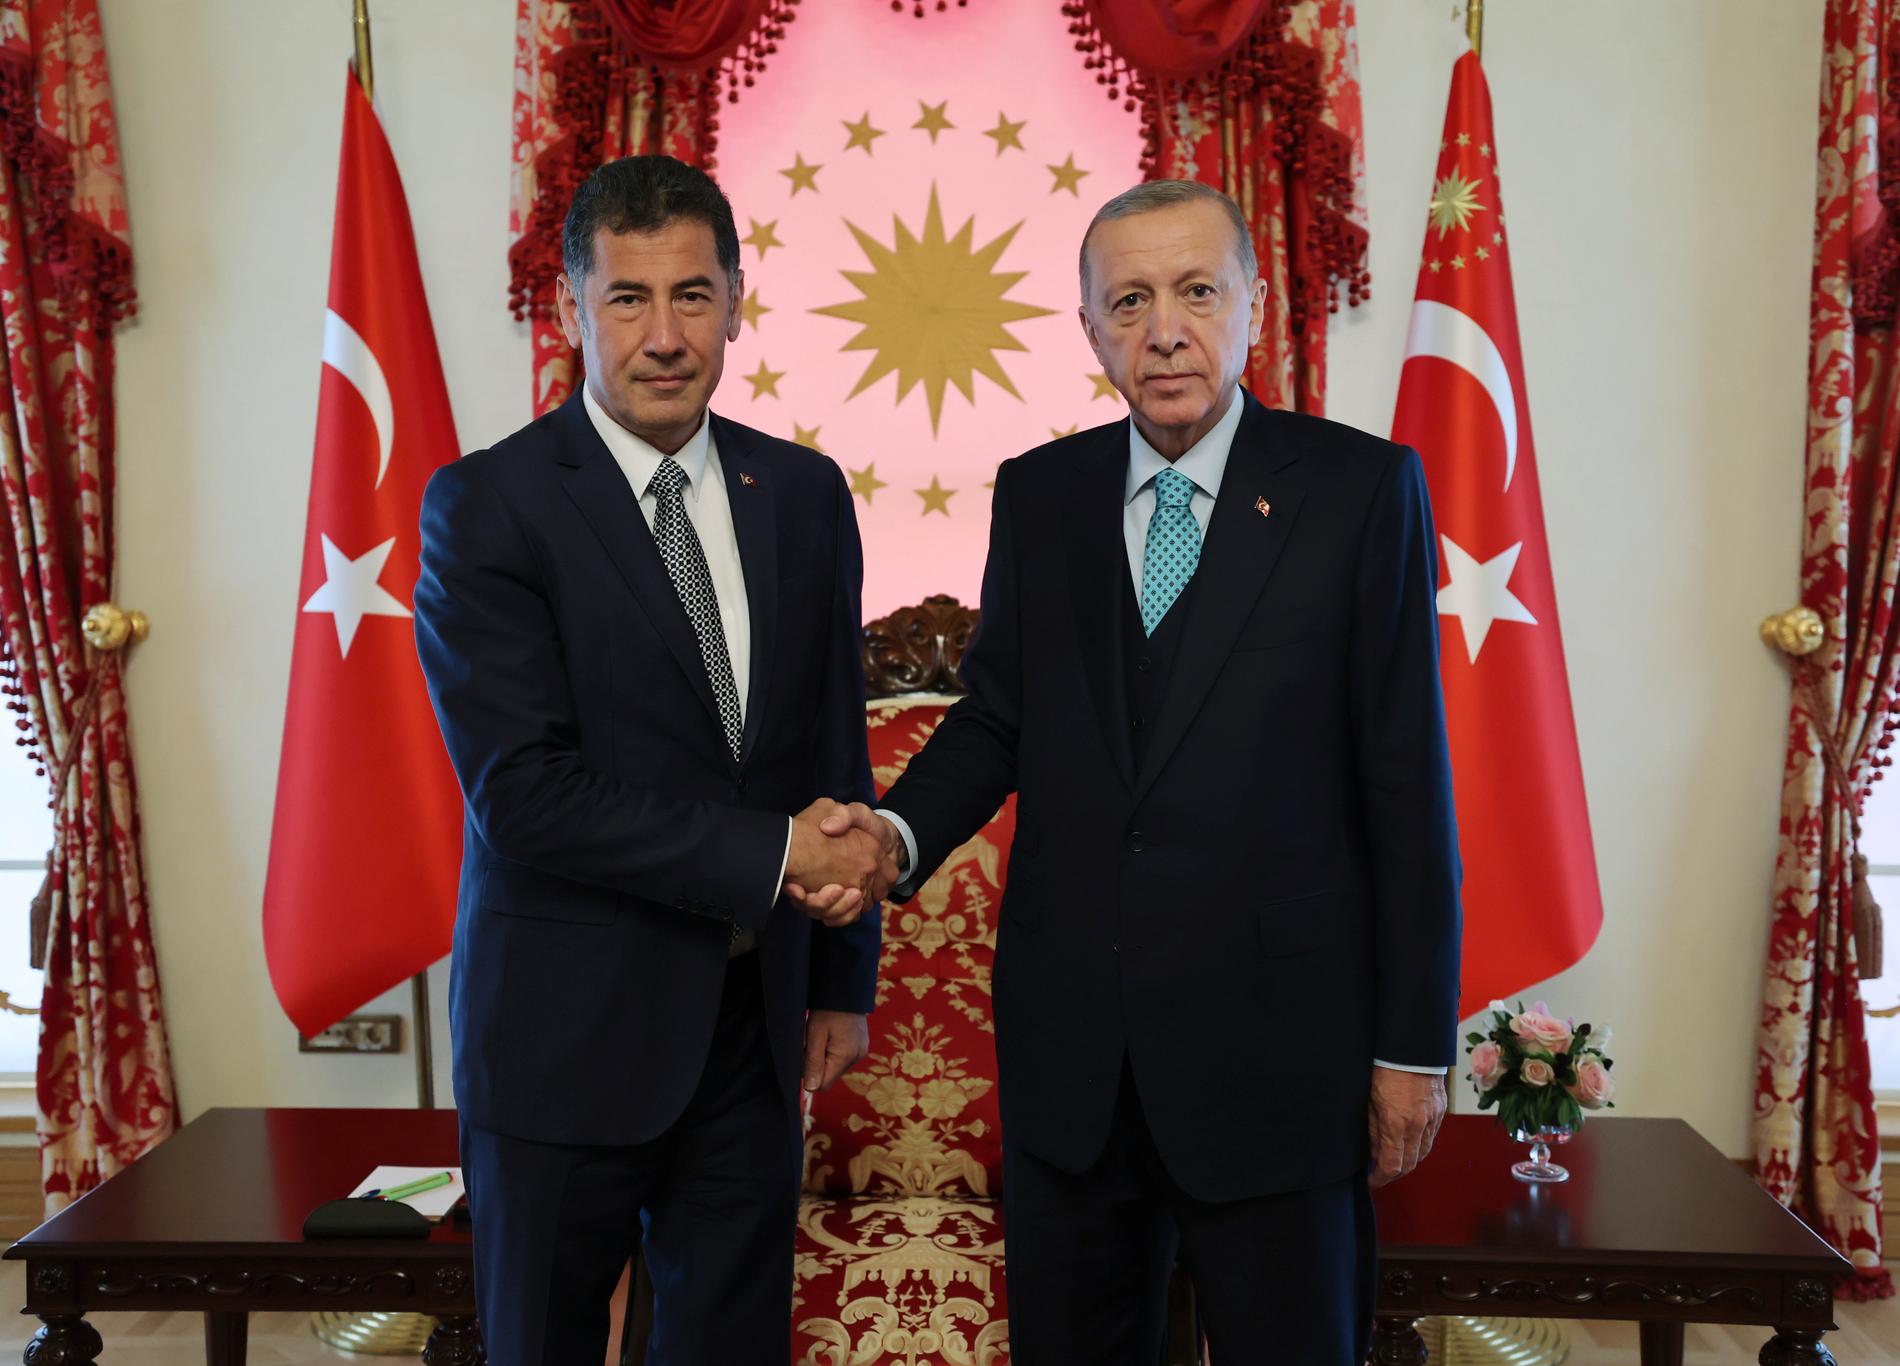 Sinan Ogan (till vänster) tillsammans med sittande presidenten Recep Tayyip Erdogan. Bilden är från i fredags.